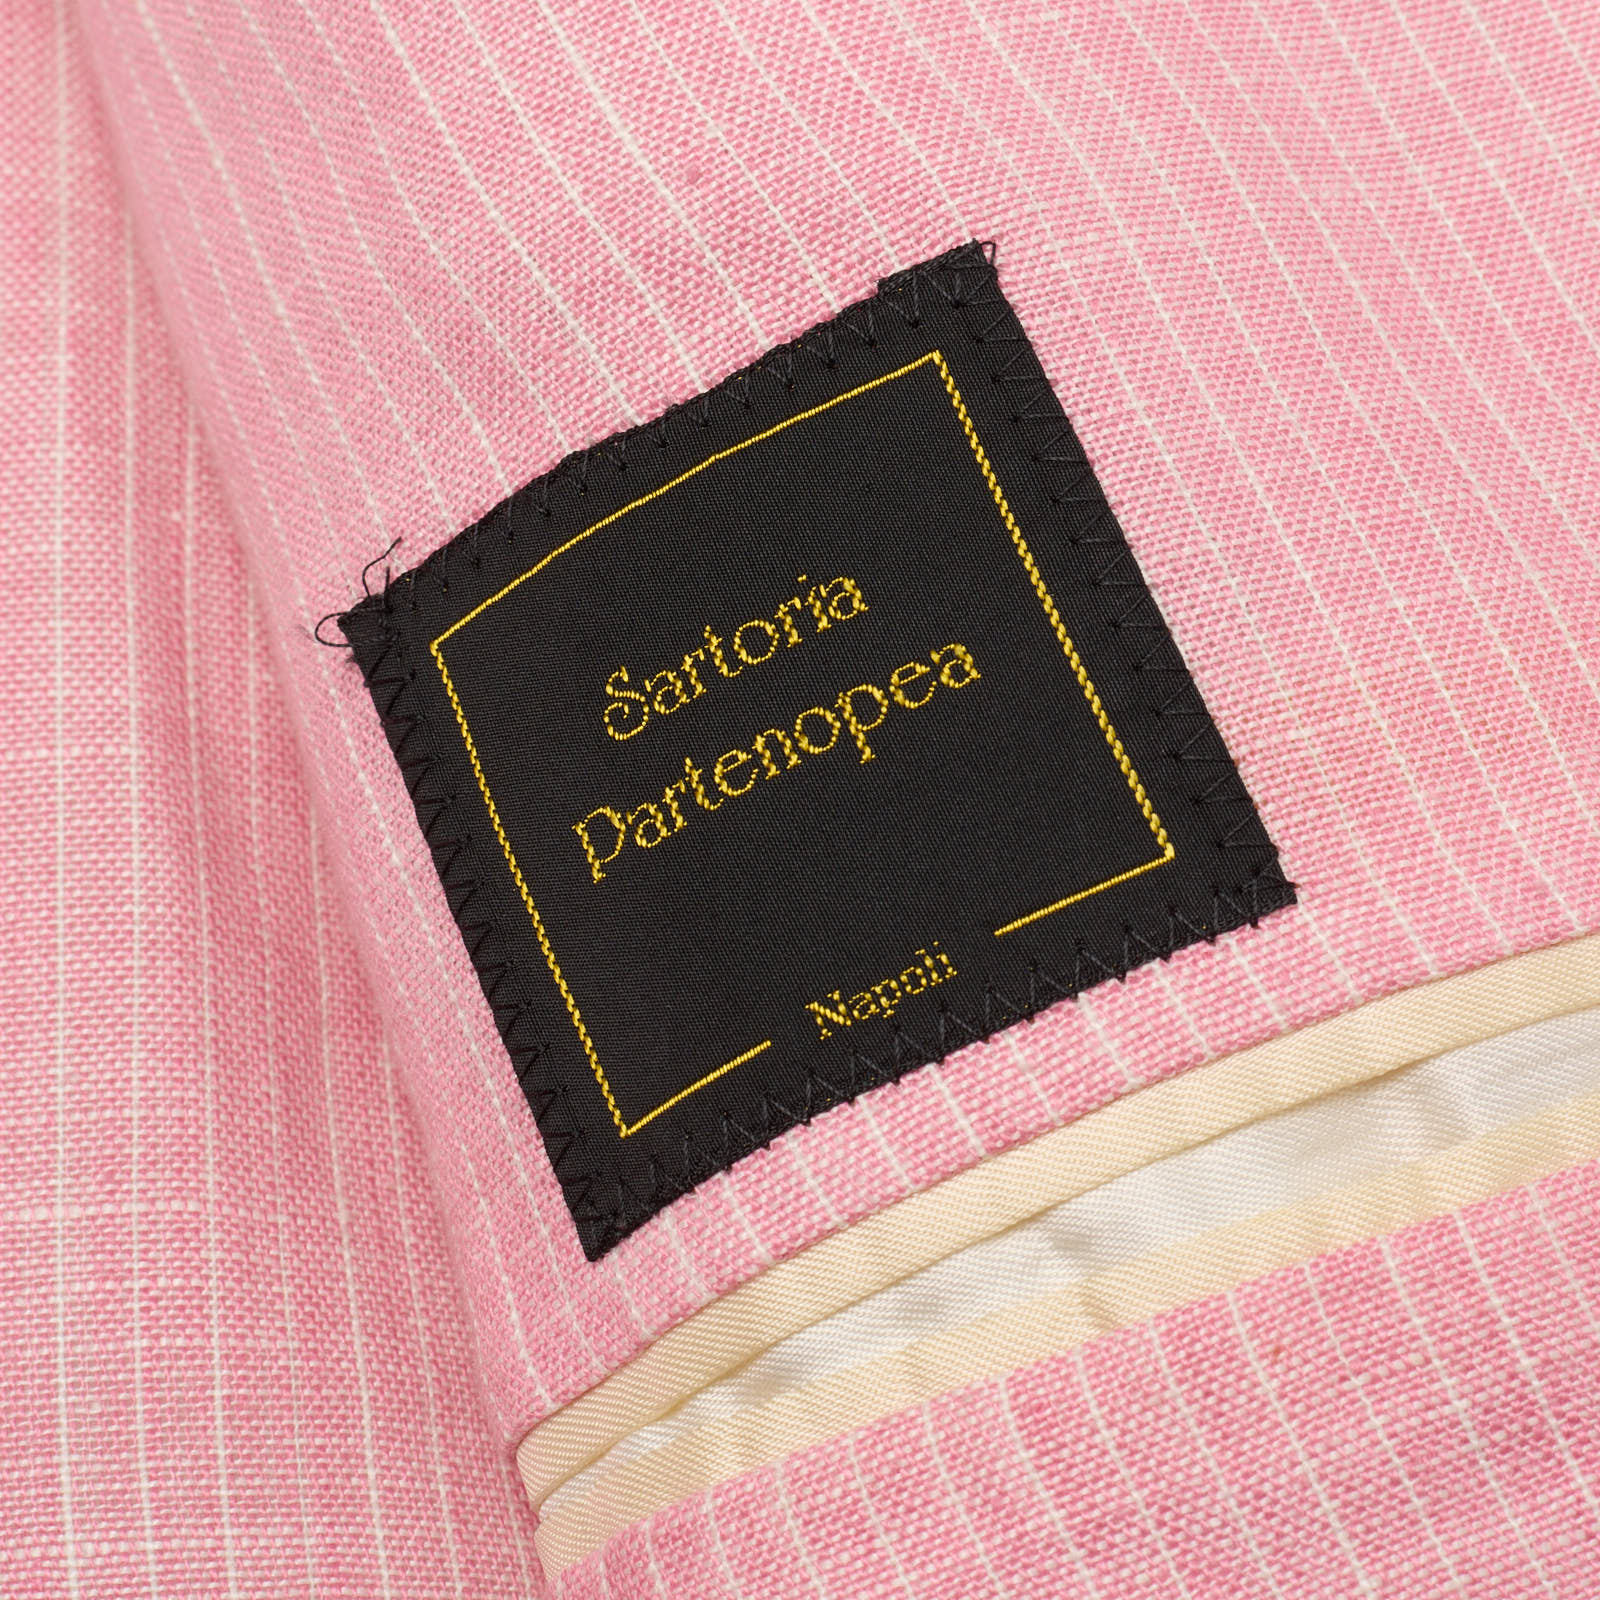 SARTORIA PARTENOPEA for VANNUCCI Handmade Pink Linen Jacket EU 46 NEW US 36